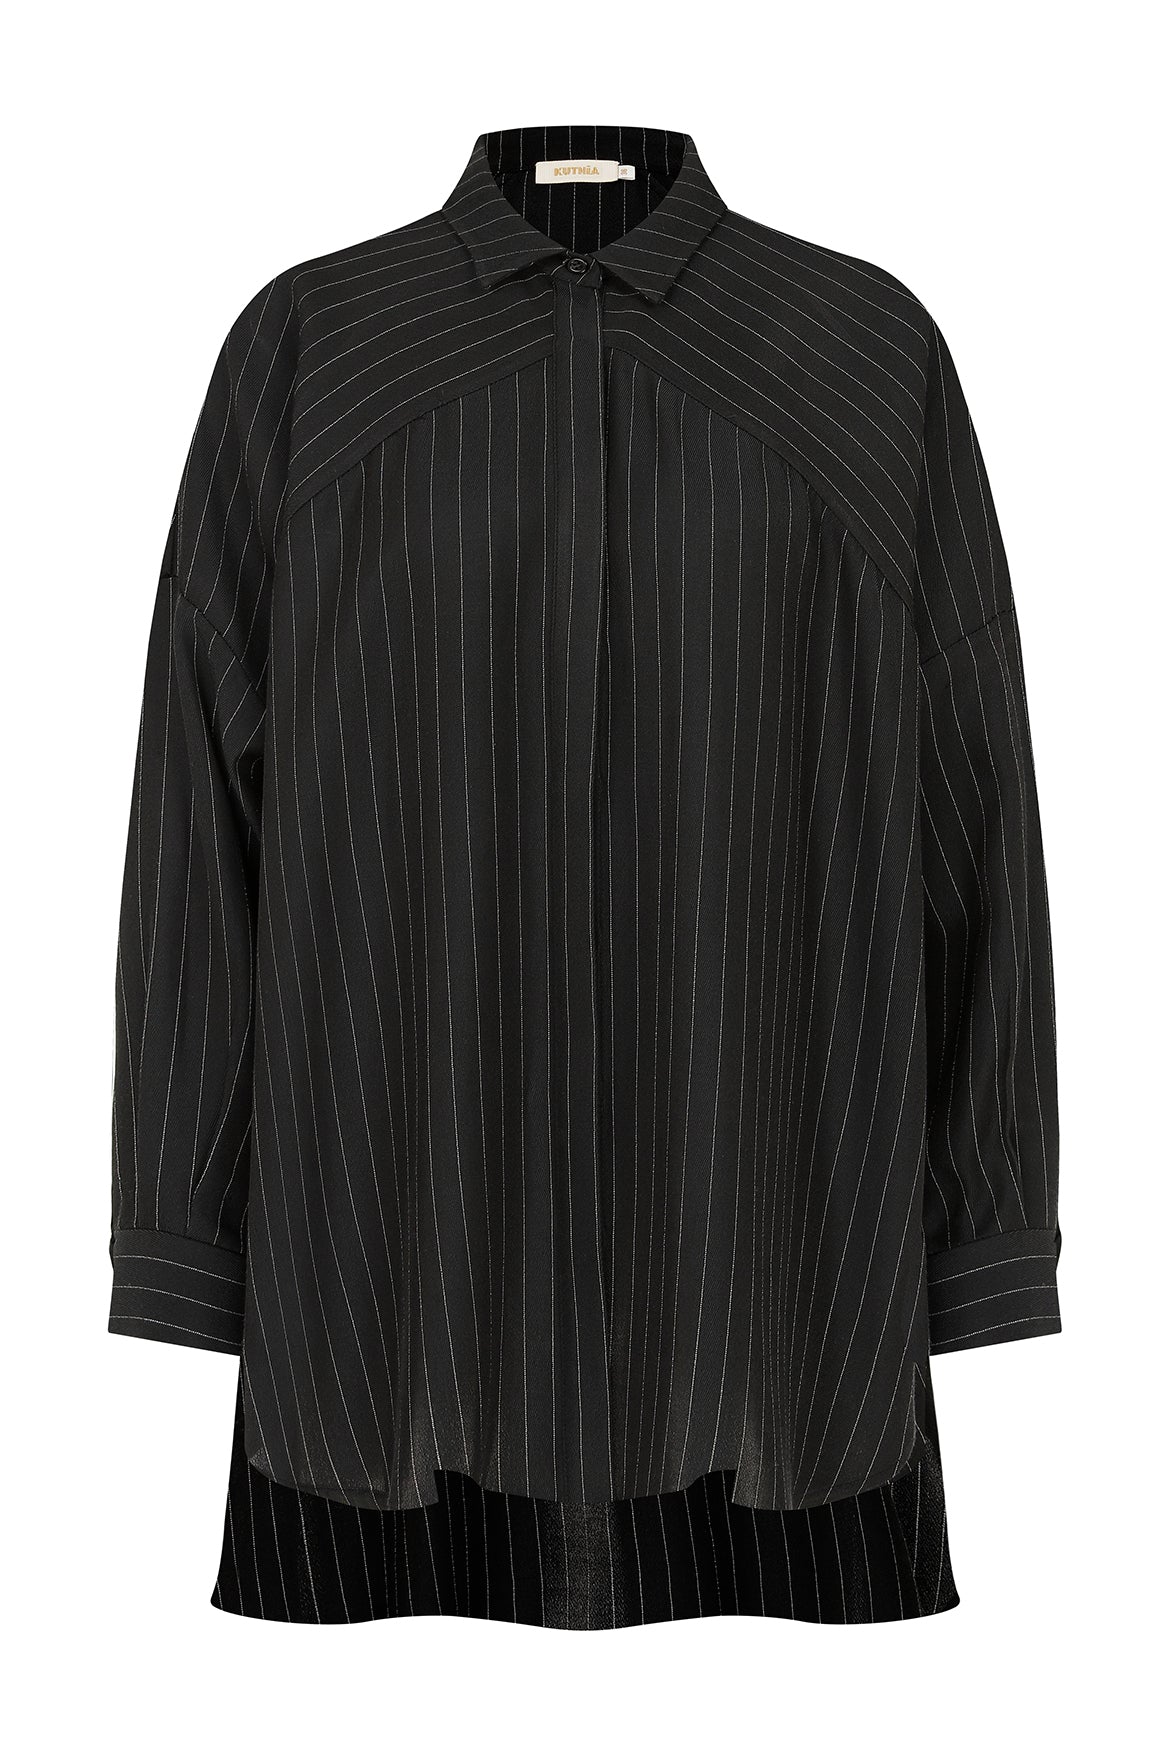 Off Shoulder Striped Black Kutnu Shirt